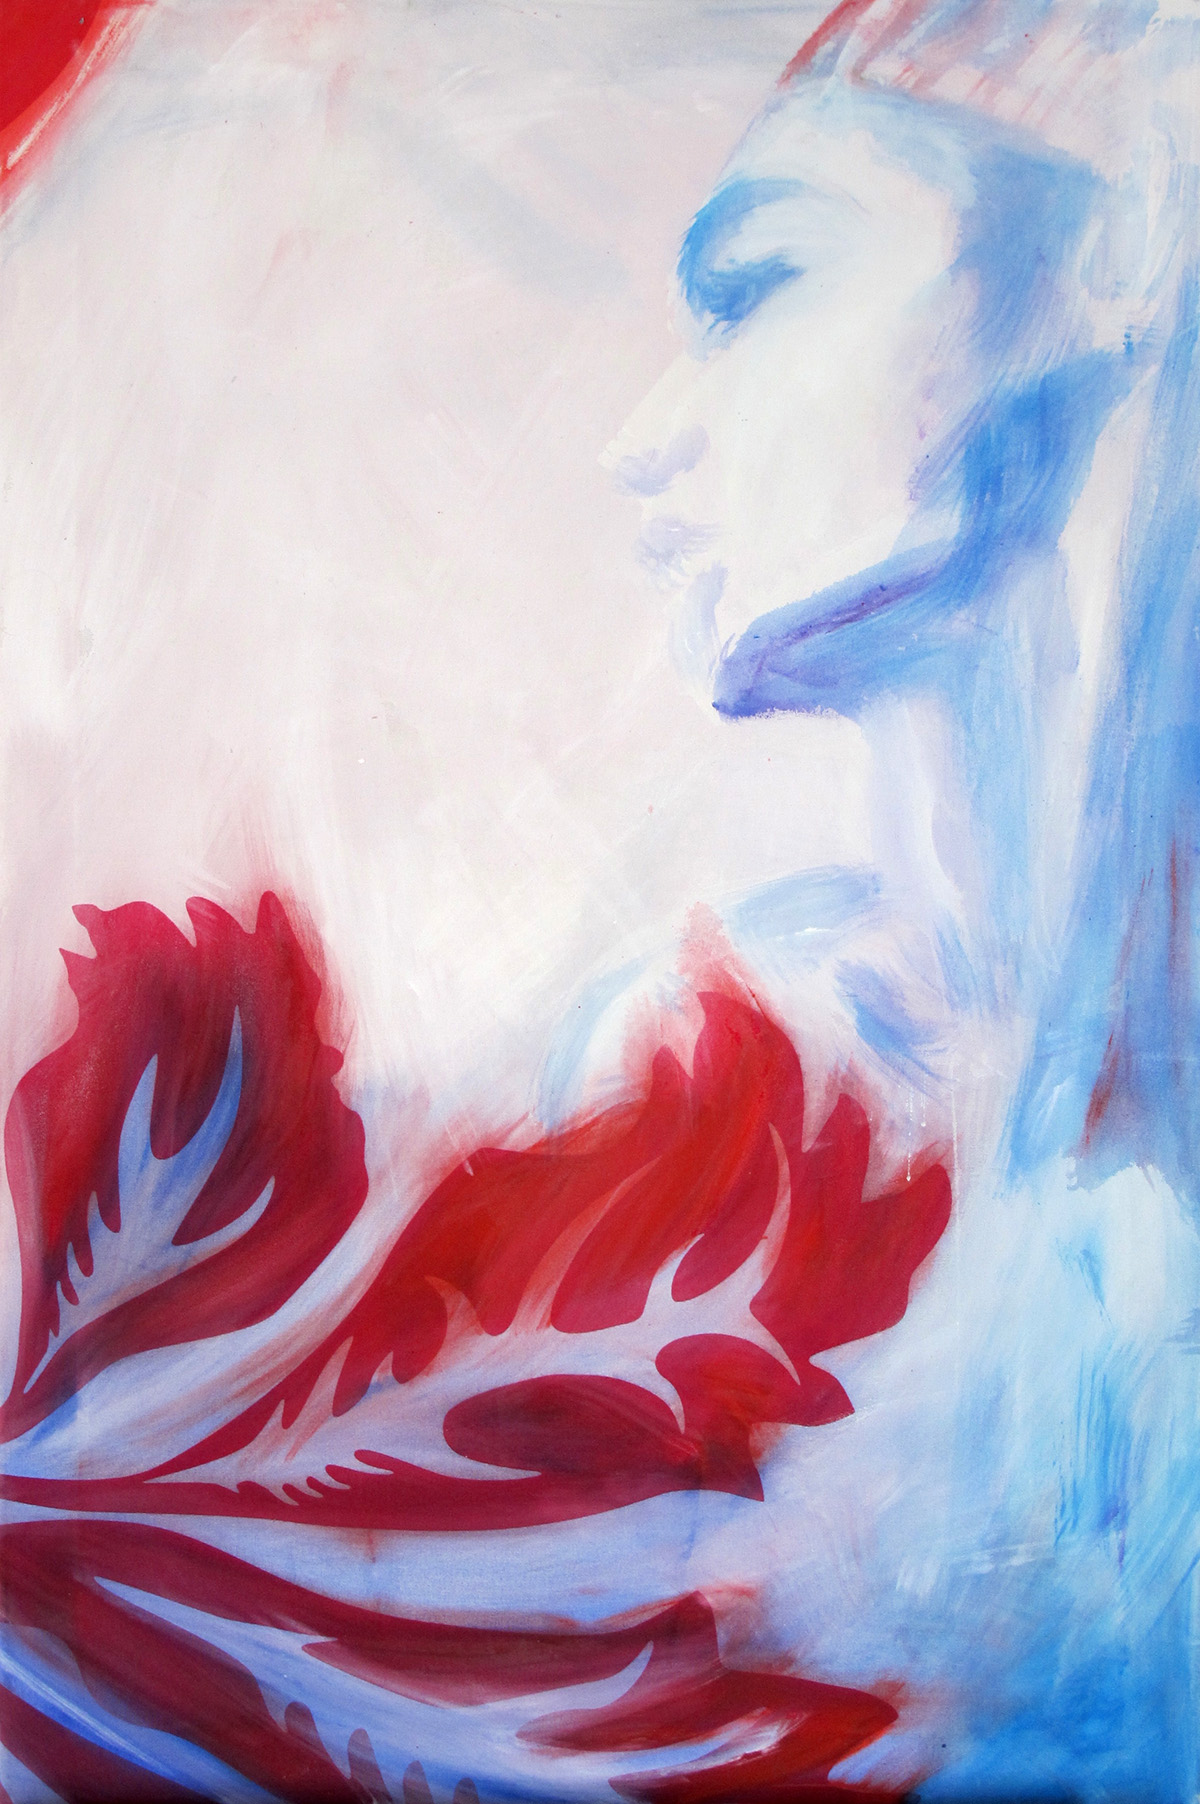 Profil einer Person in weiß und hellblau mit einem großen, roten Pflanzenblatt im Vordergrund